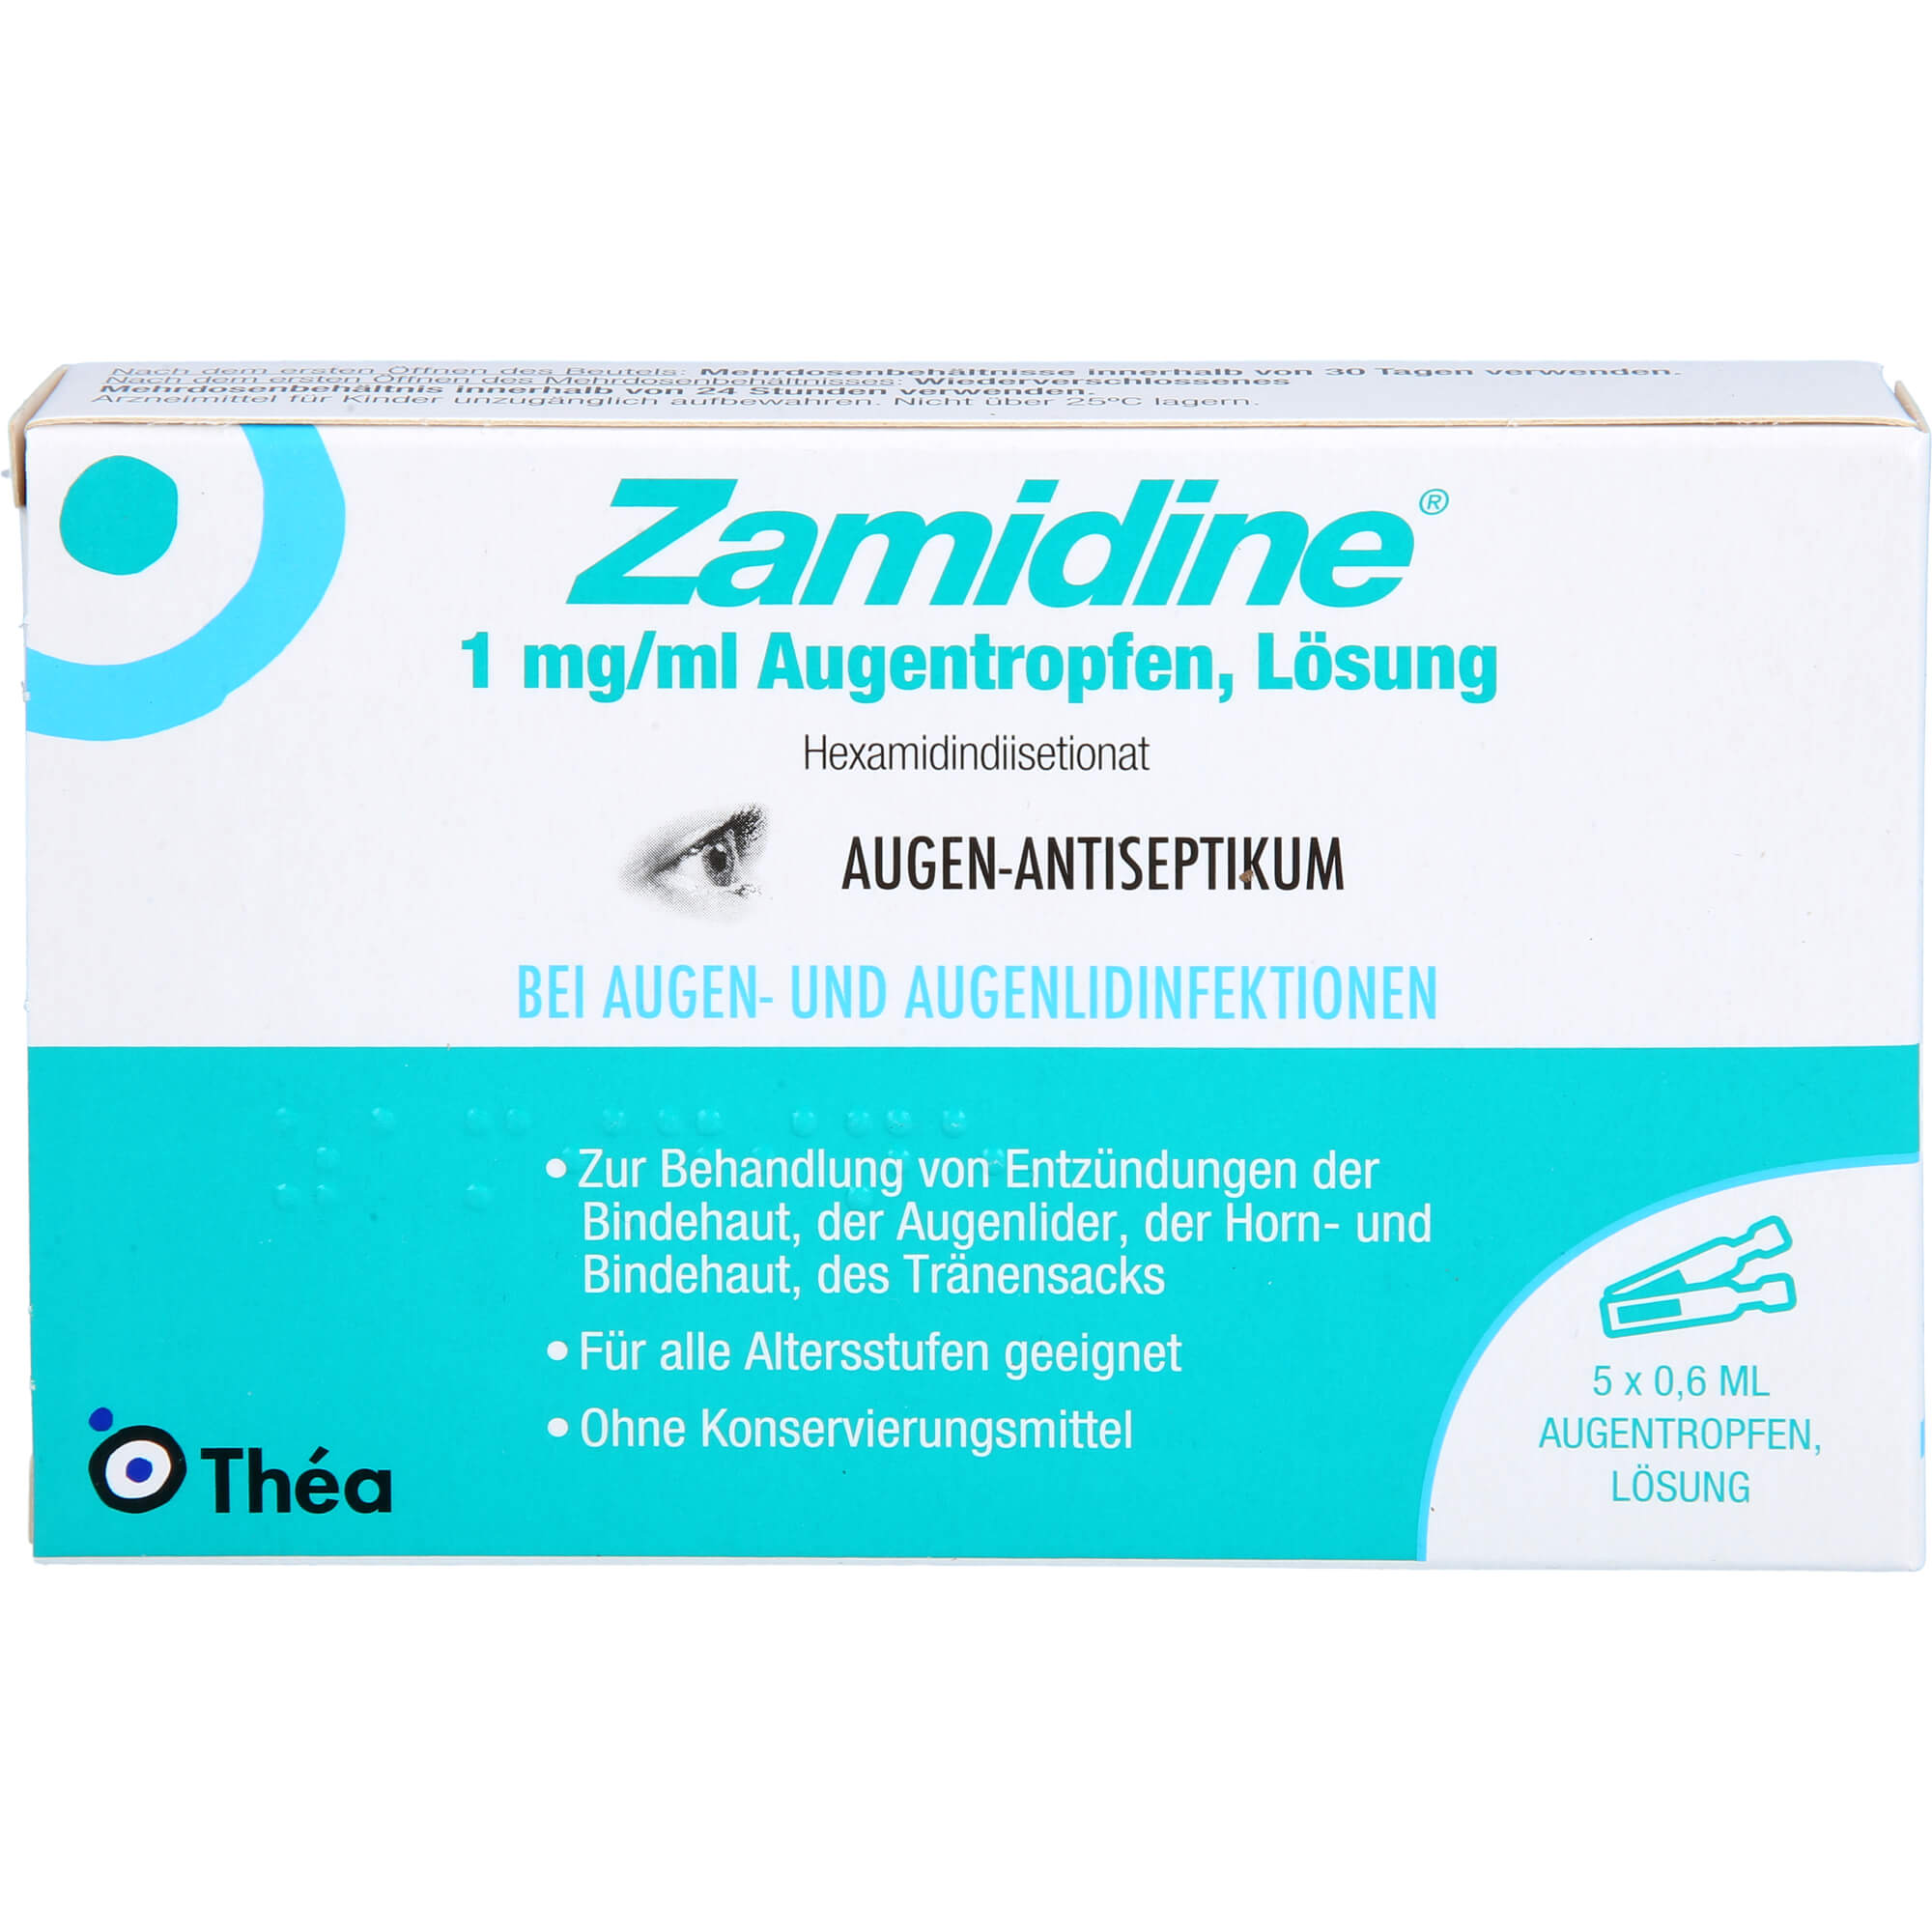 ZAMIDINE 1 mg/ml Augentropfen Mehrdosenbehältnisse